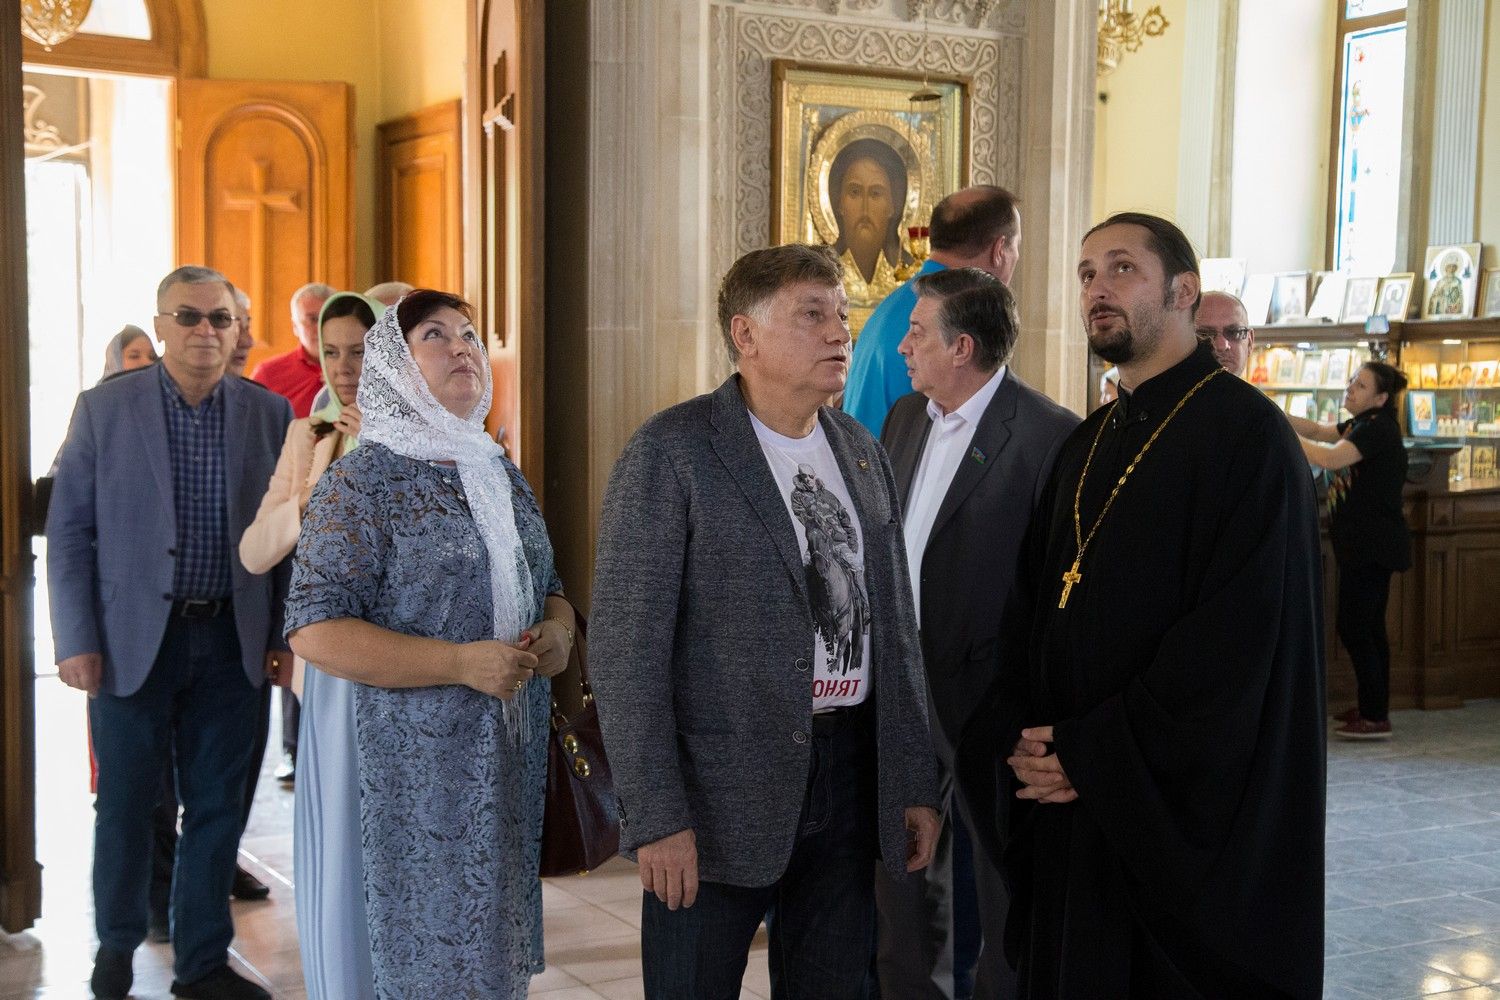 Высокопреосвященный архиепископ Александр принял официальную делегацию во главе с Председателем Законодательного собрания г. Санкт-Петербурга г-ном Макаровым В.С.